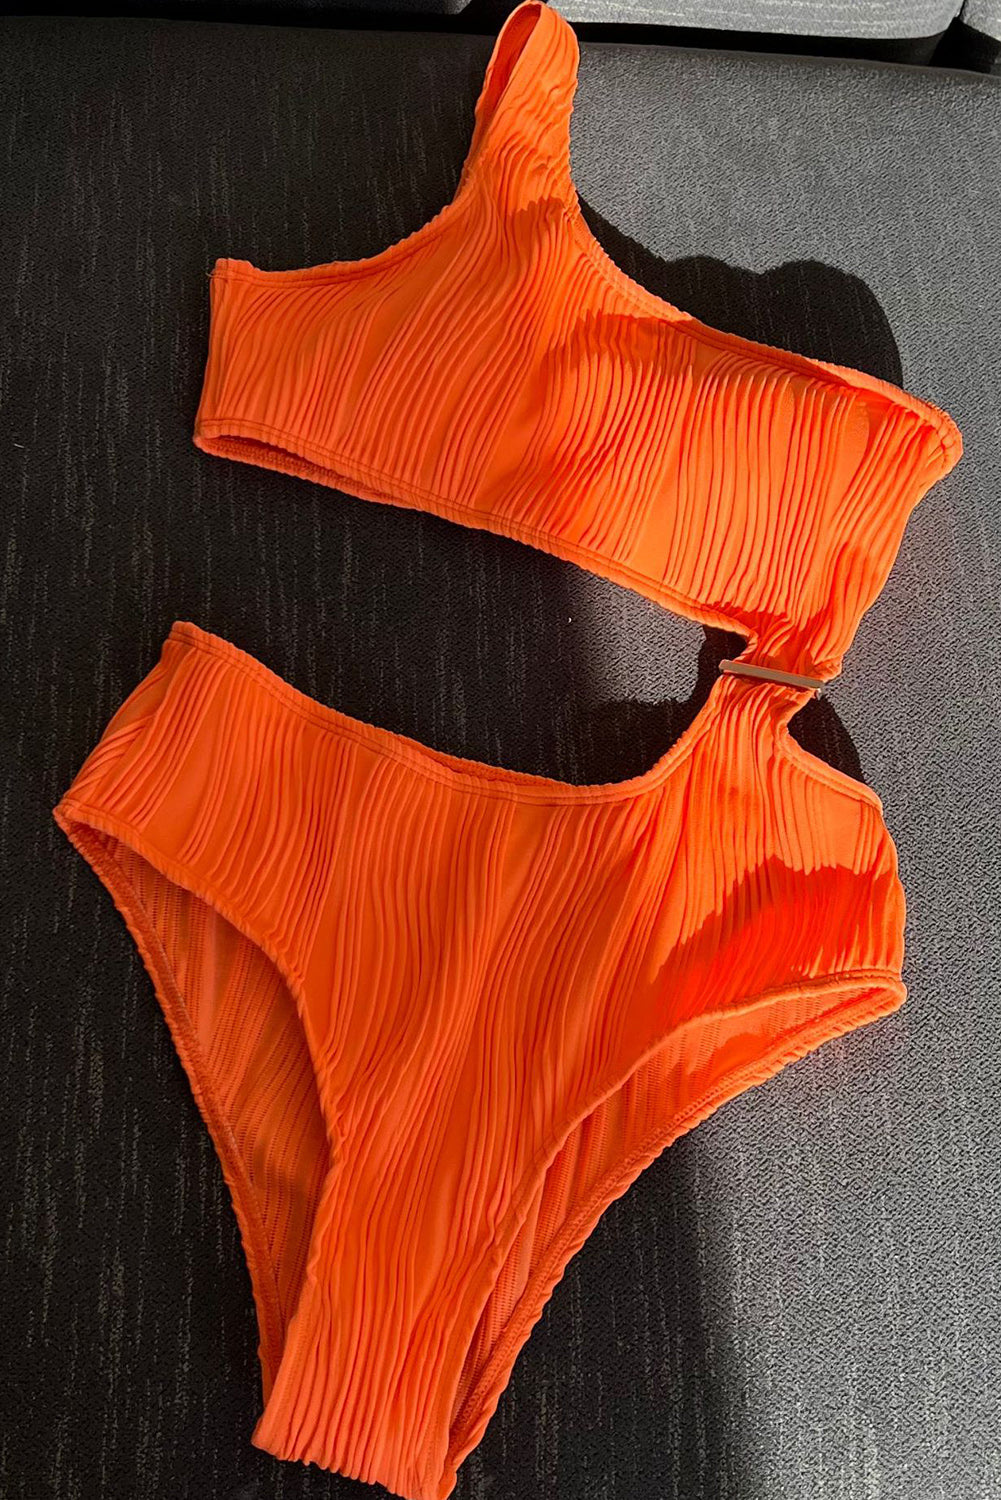 Narančasti monokini s valovitom teksturom, izrezan na jedno rame